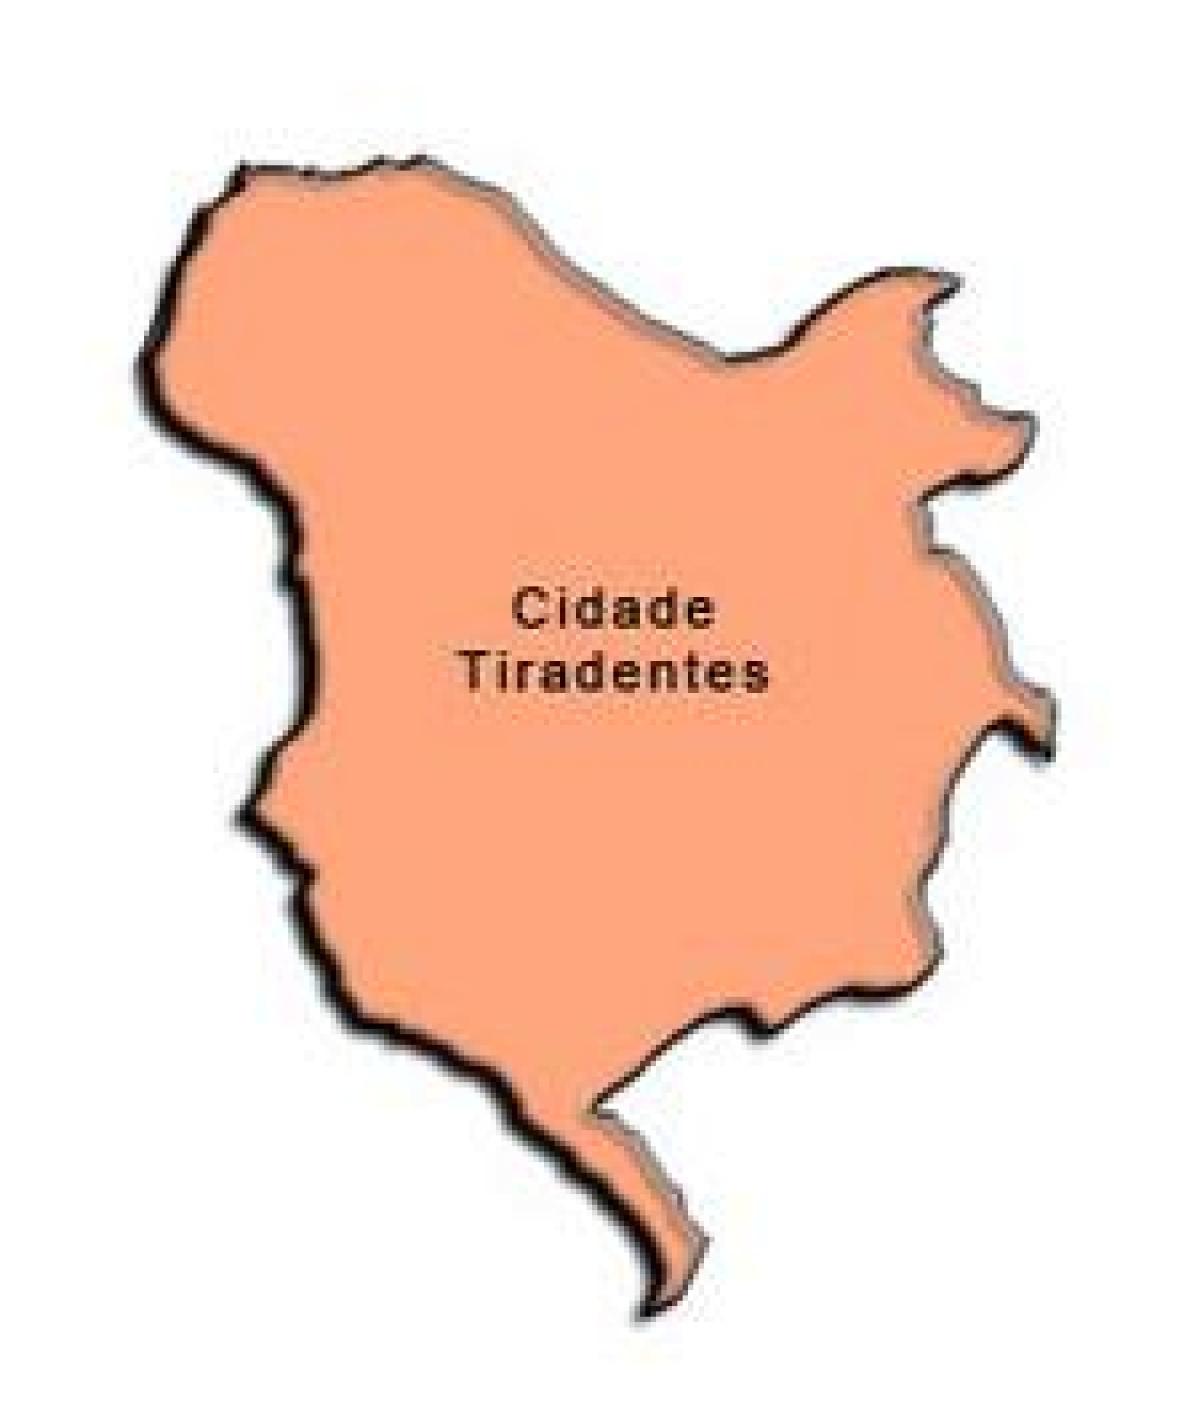 Kart over Cidade Tiradentes-sub-prefecture